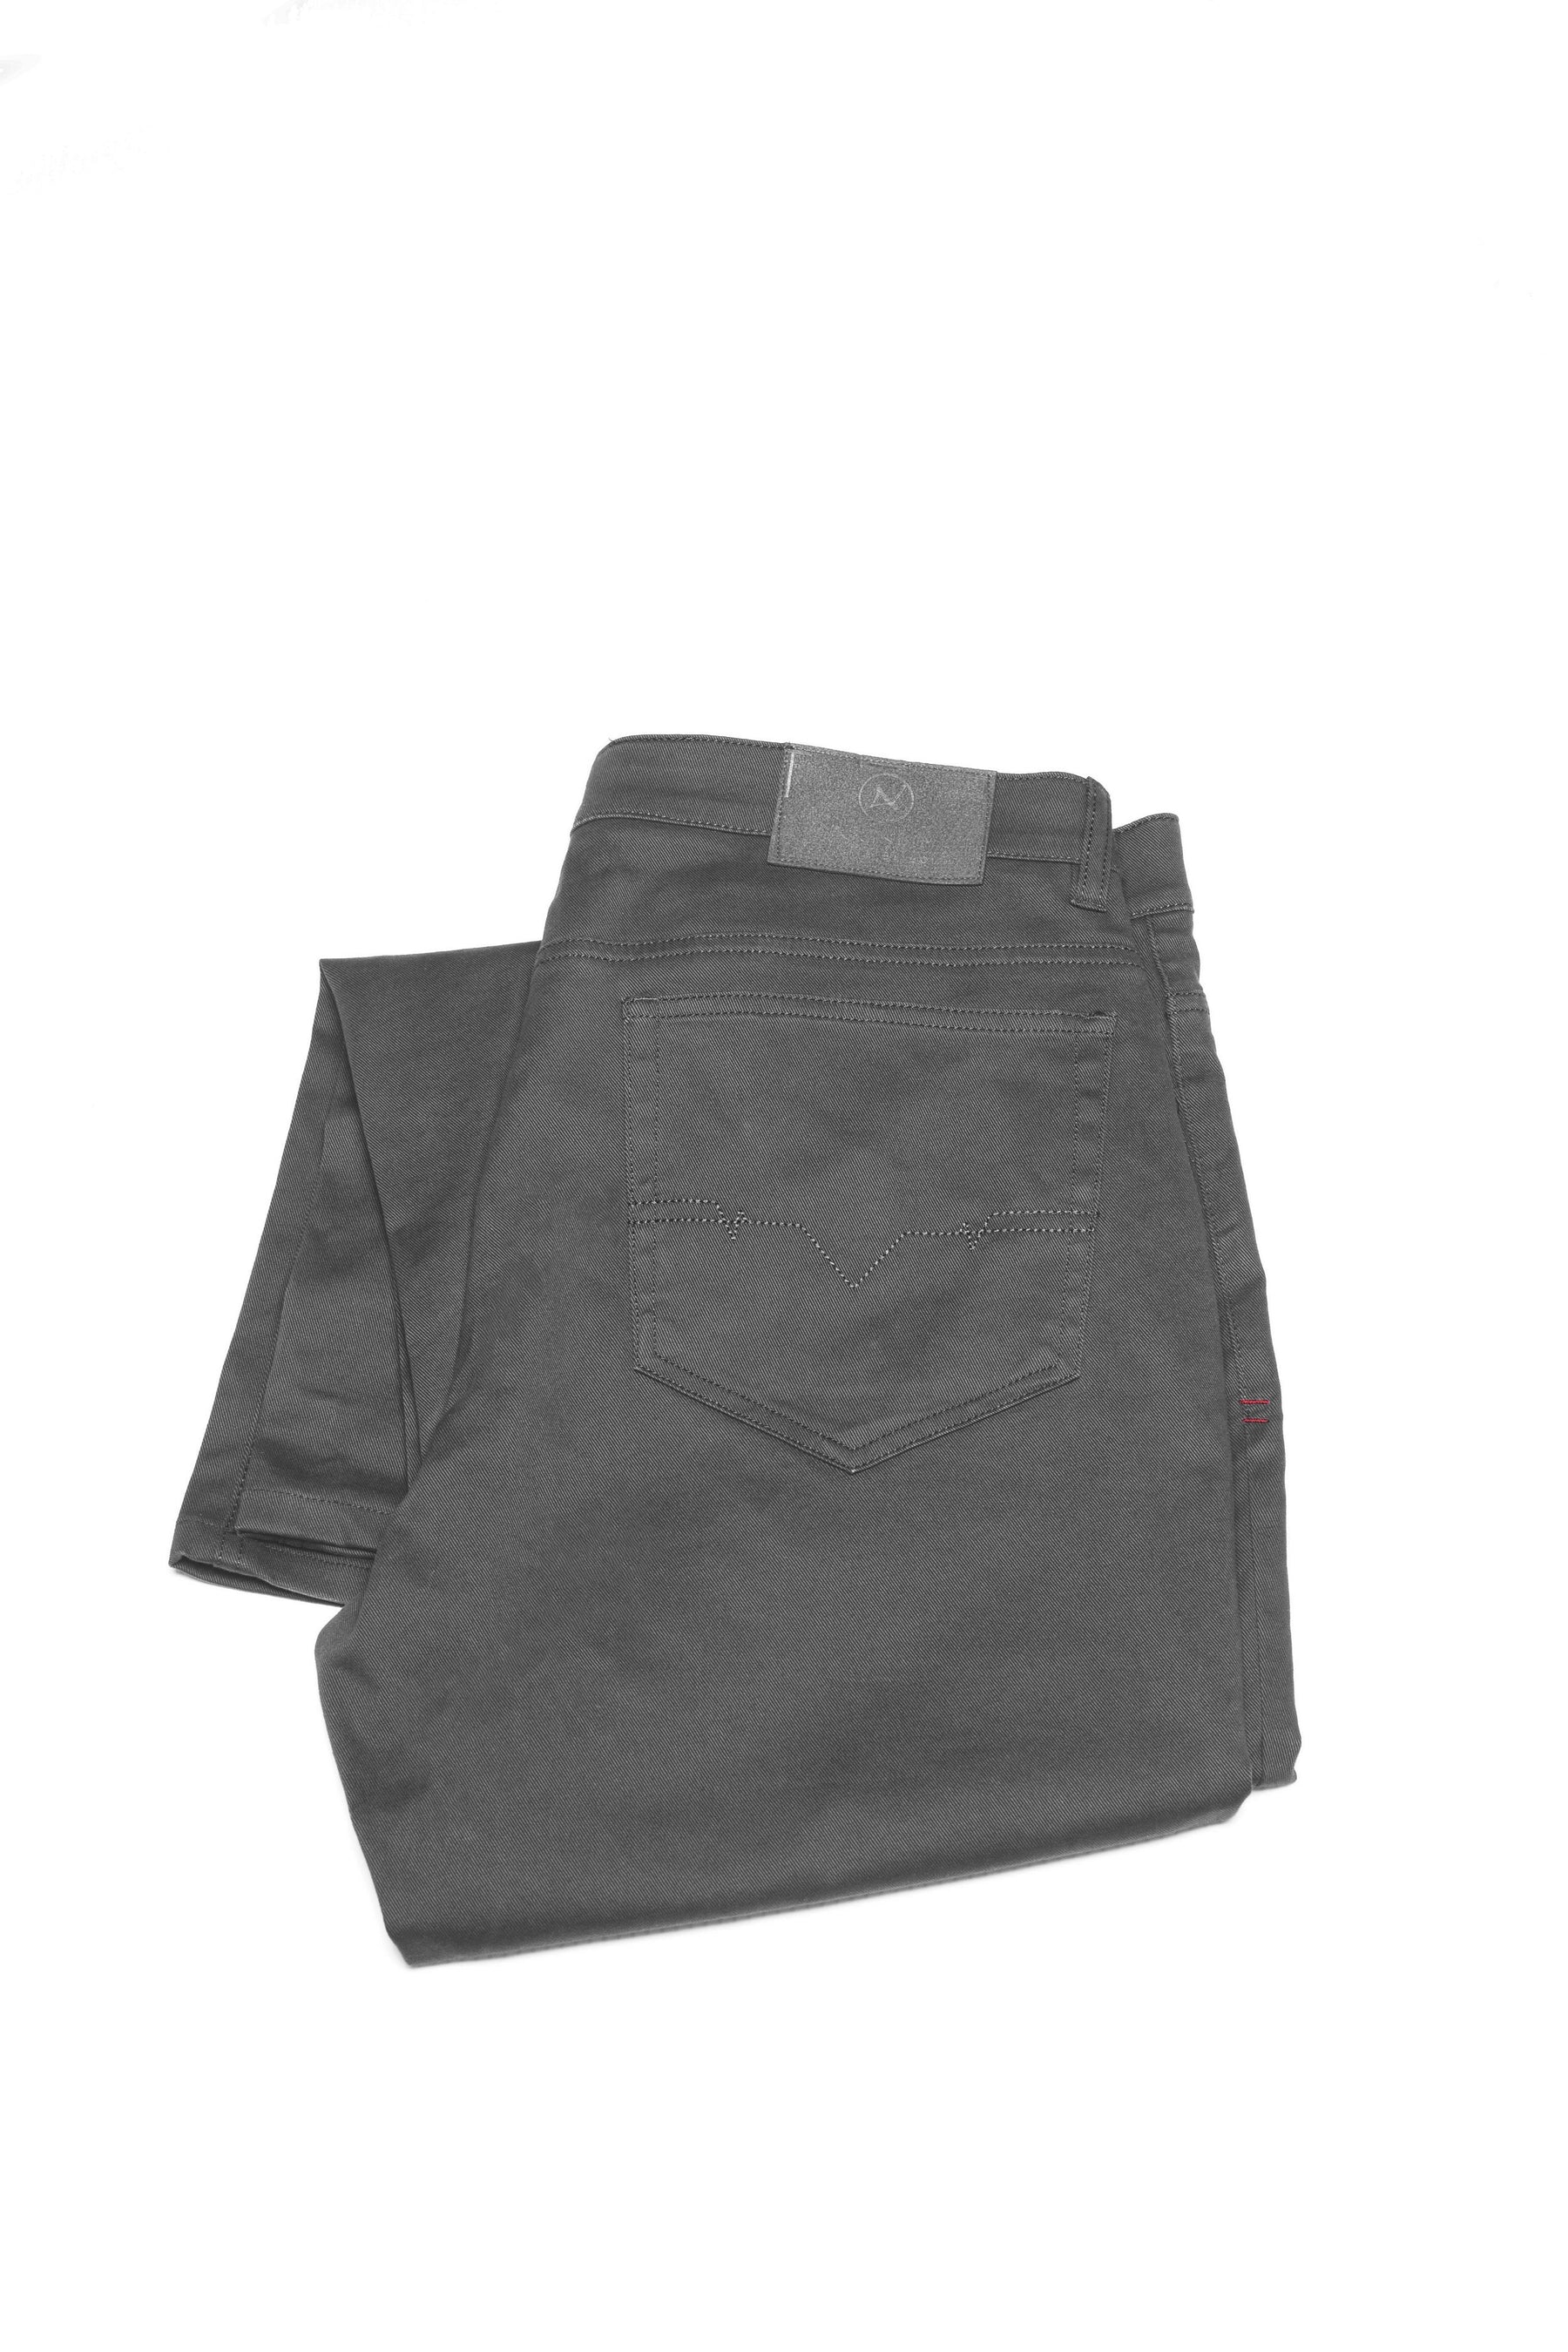 Pantalon Au Noir - SIGNUM grey